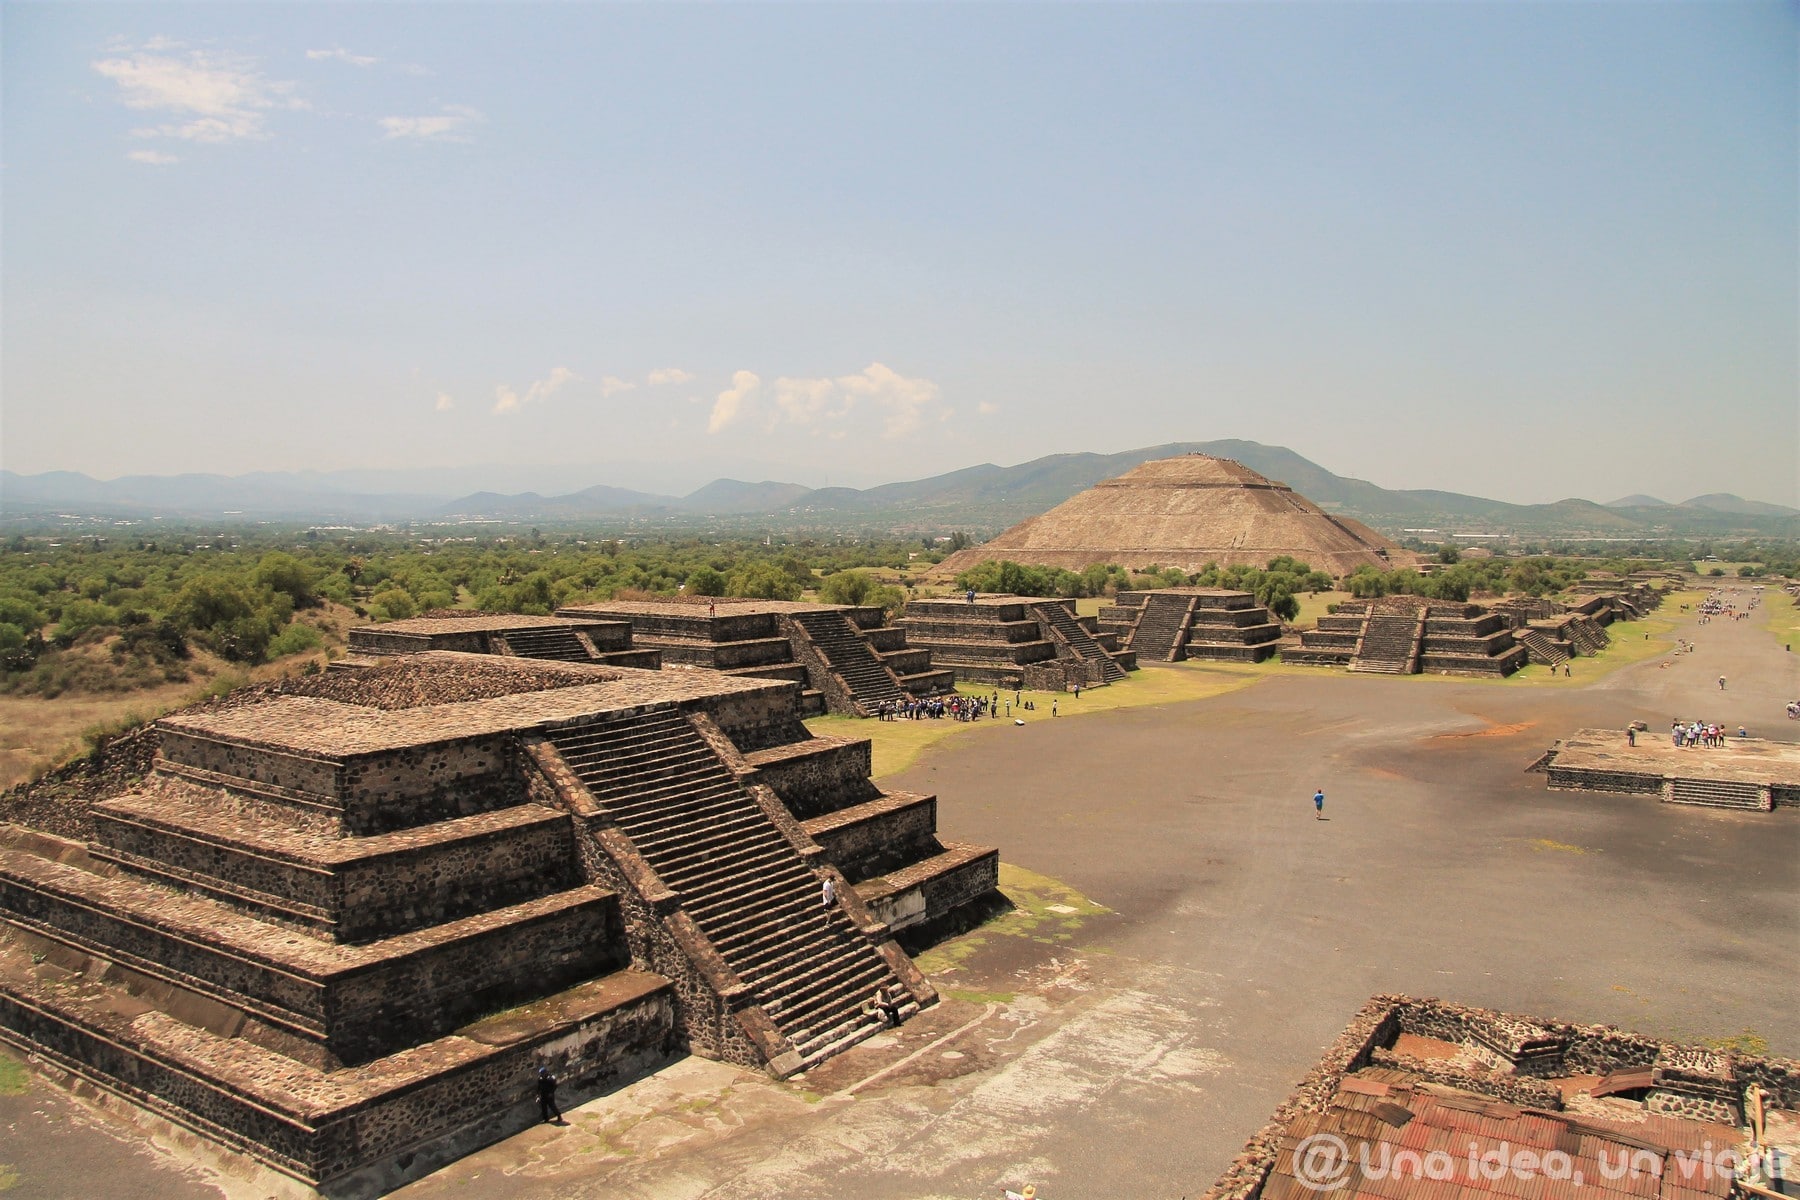 Perspectiva al visitar Teotihuacán